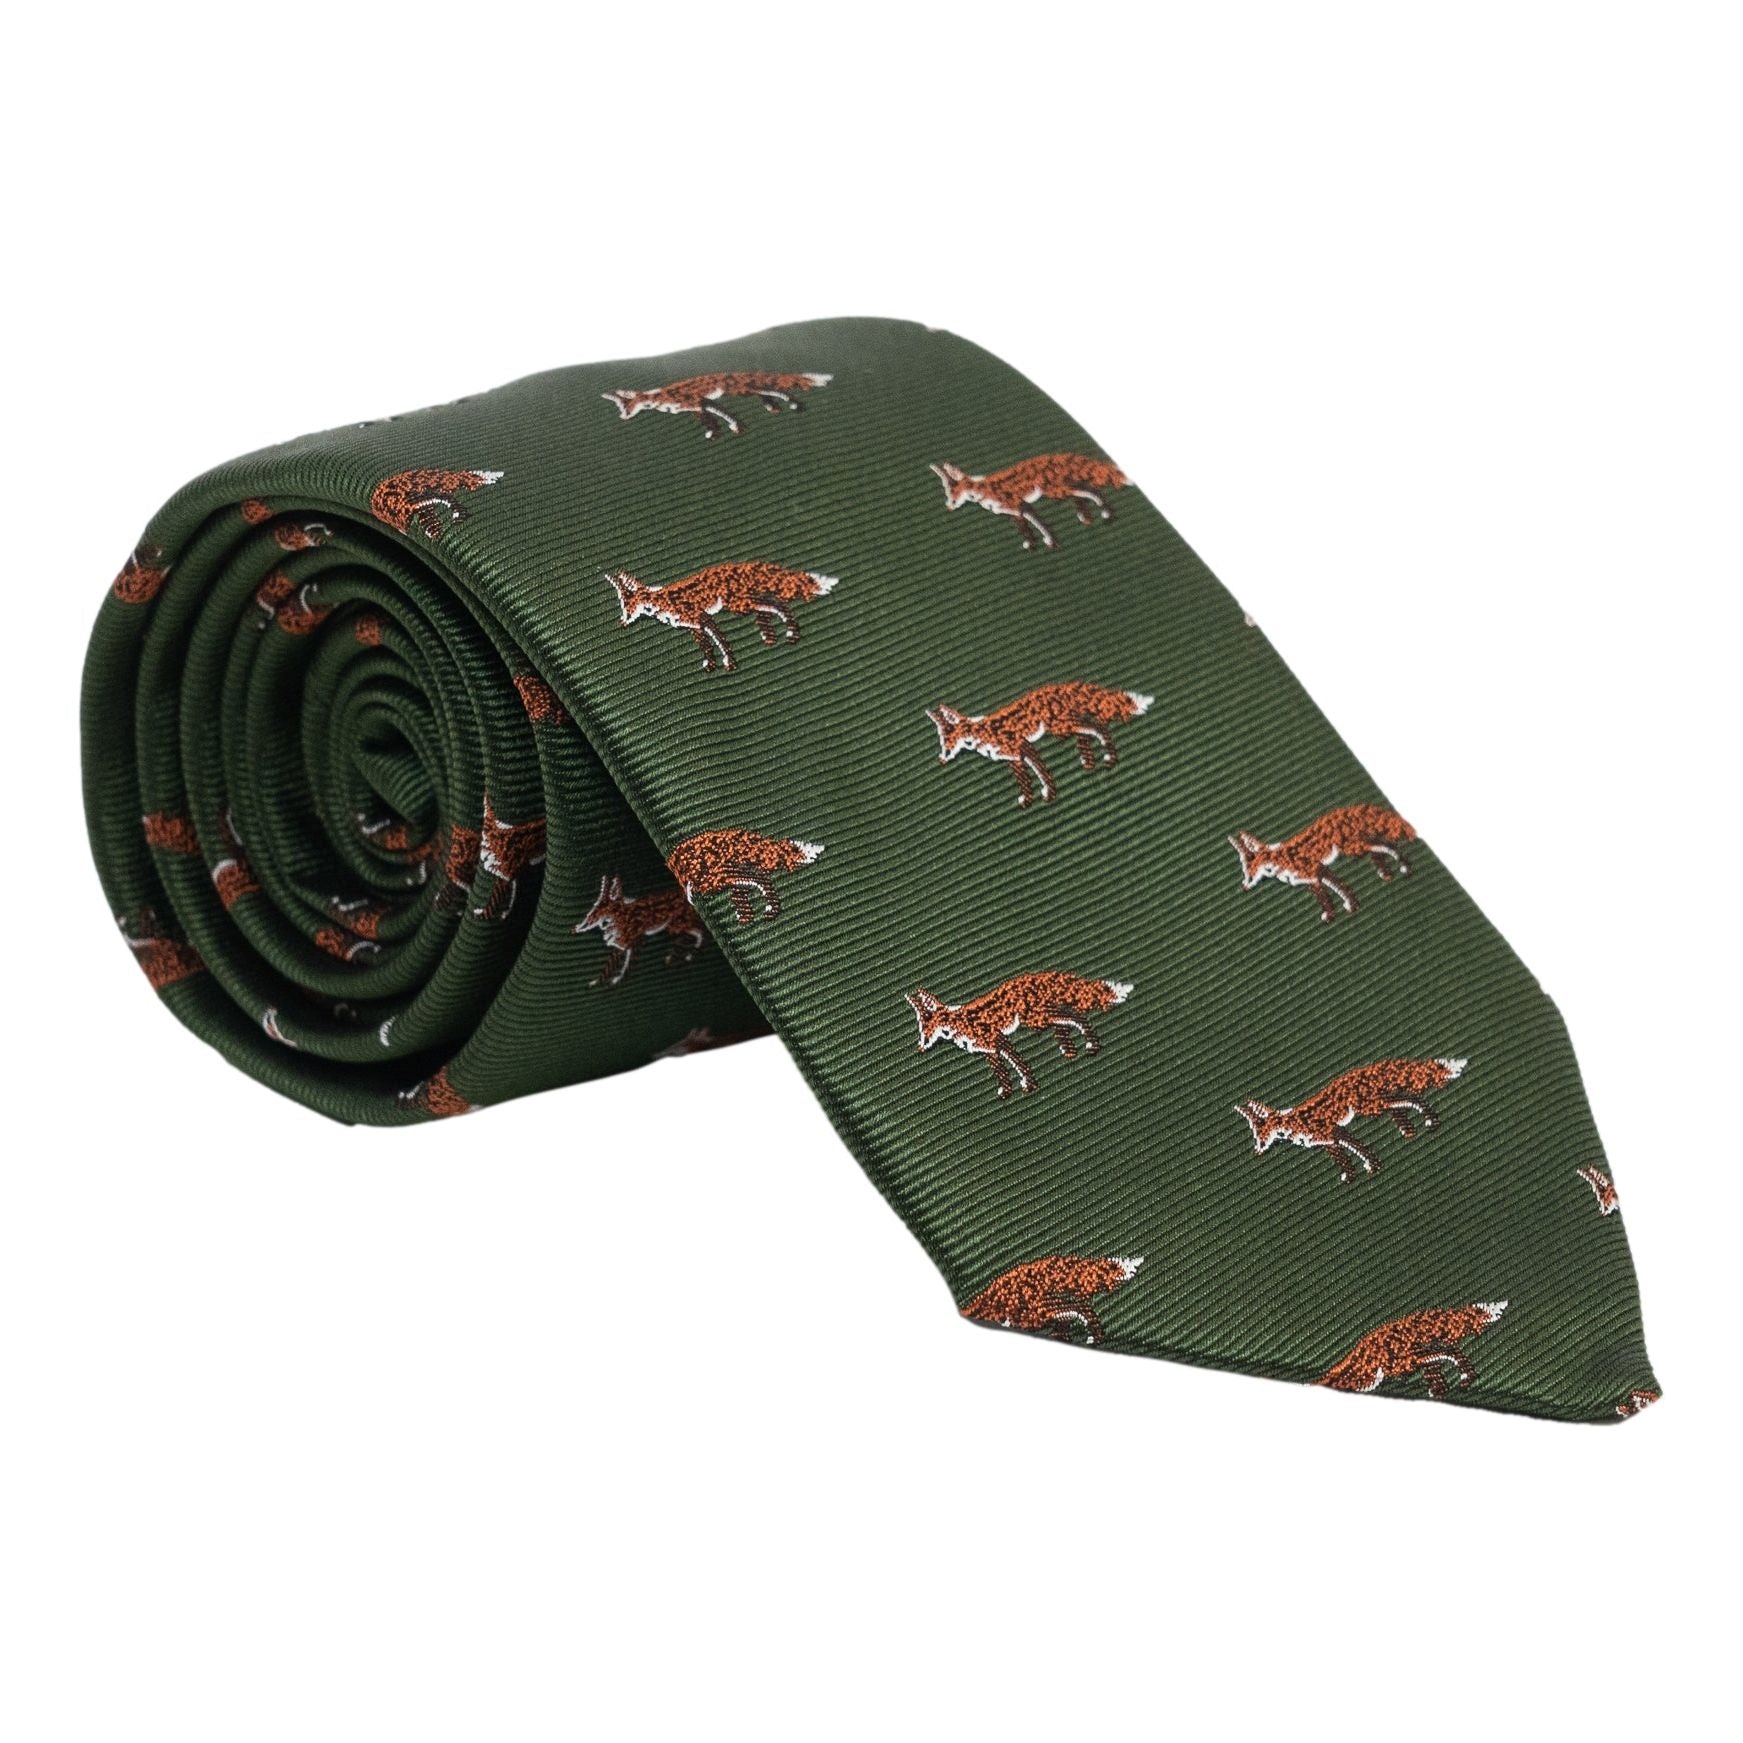 Fox Silk Tie